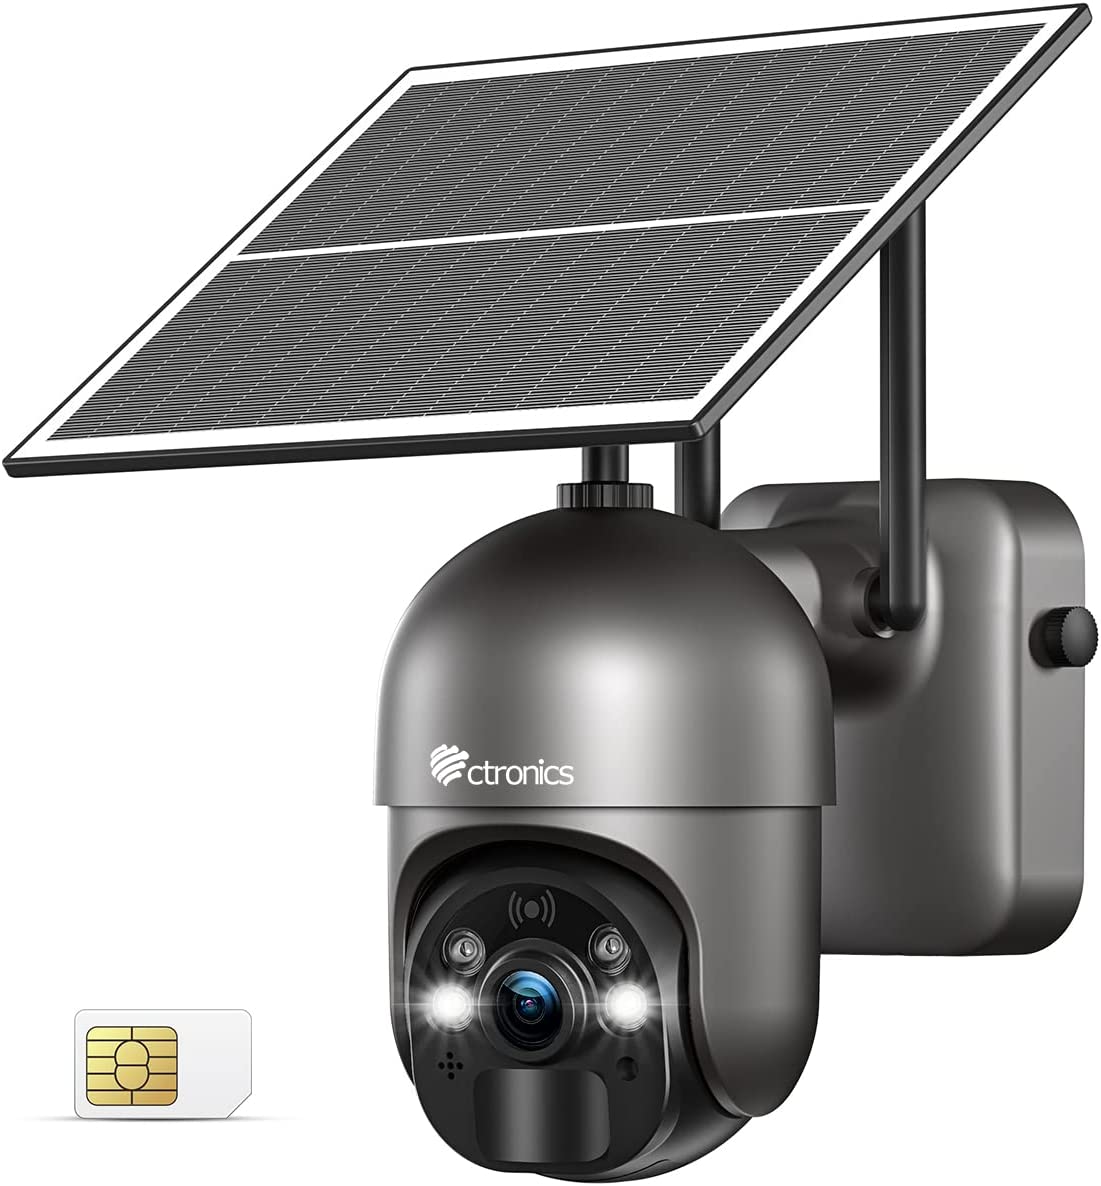 GABRIELLE Caméra Surveillance WiFi Exterieure sans Fil Batterie